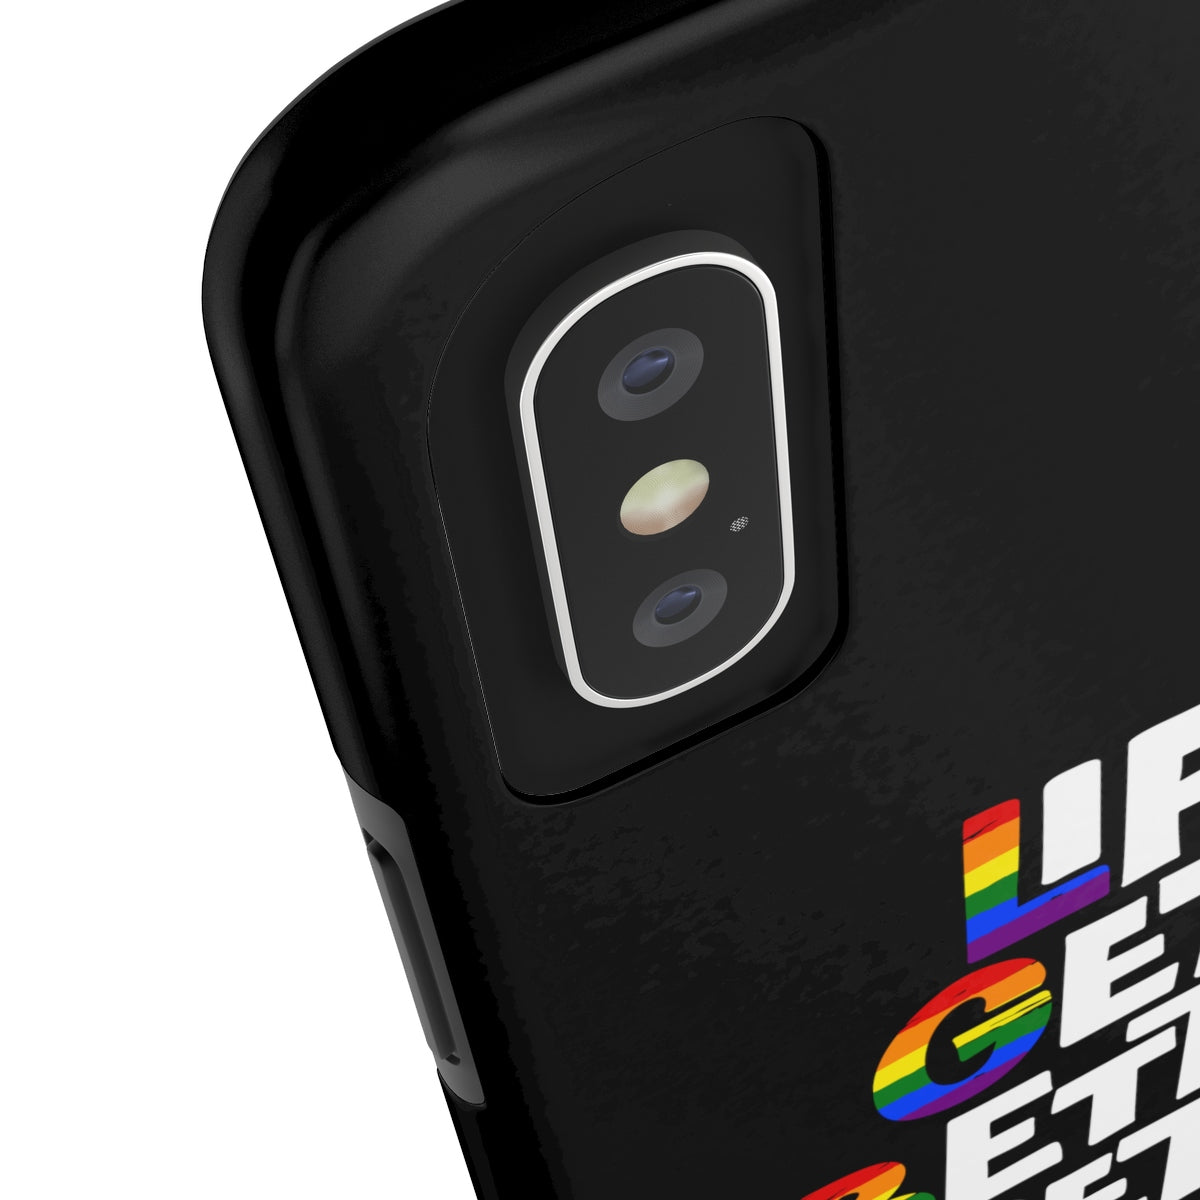 LGBT Phone Case - Alpha Dawg Designs